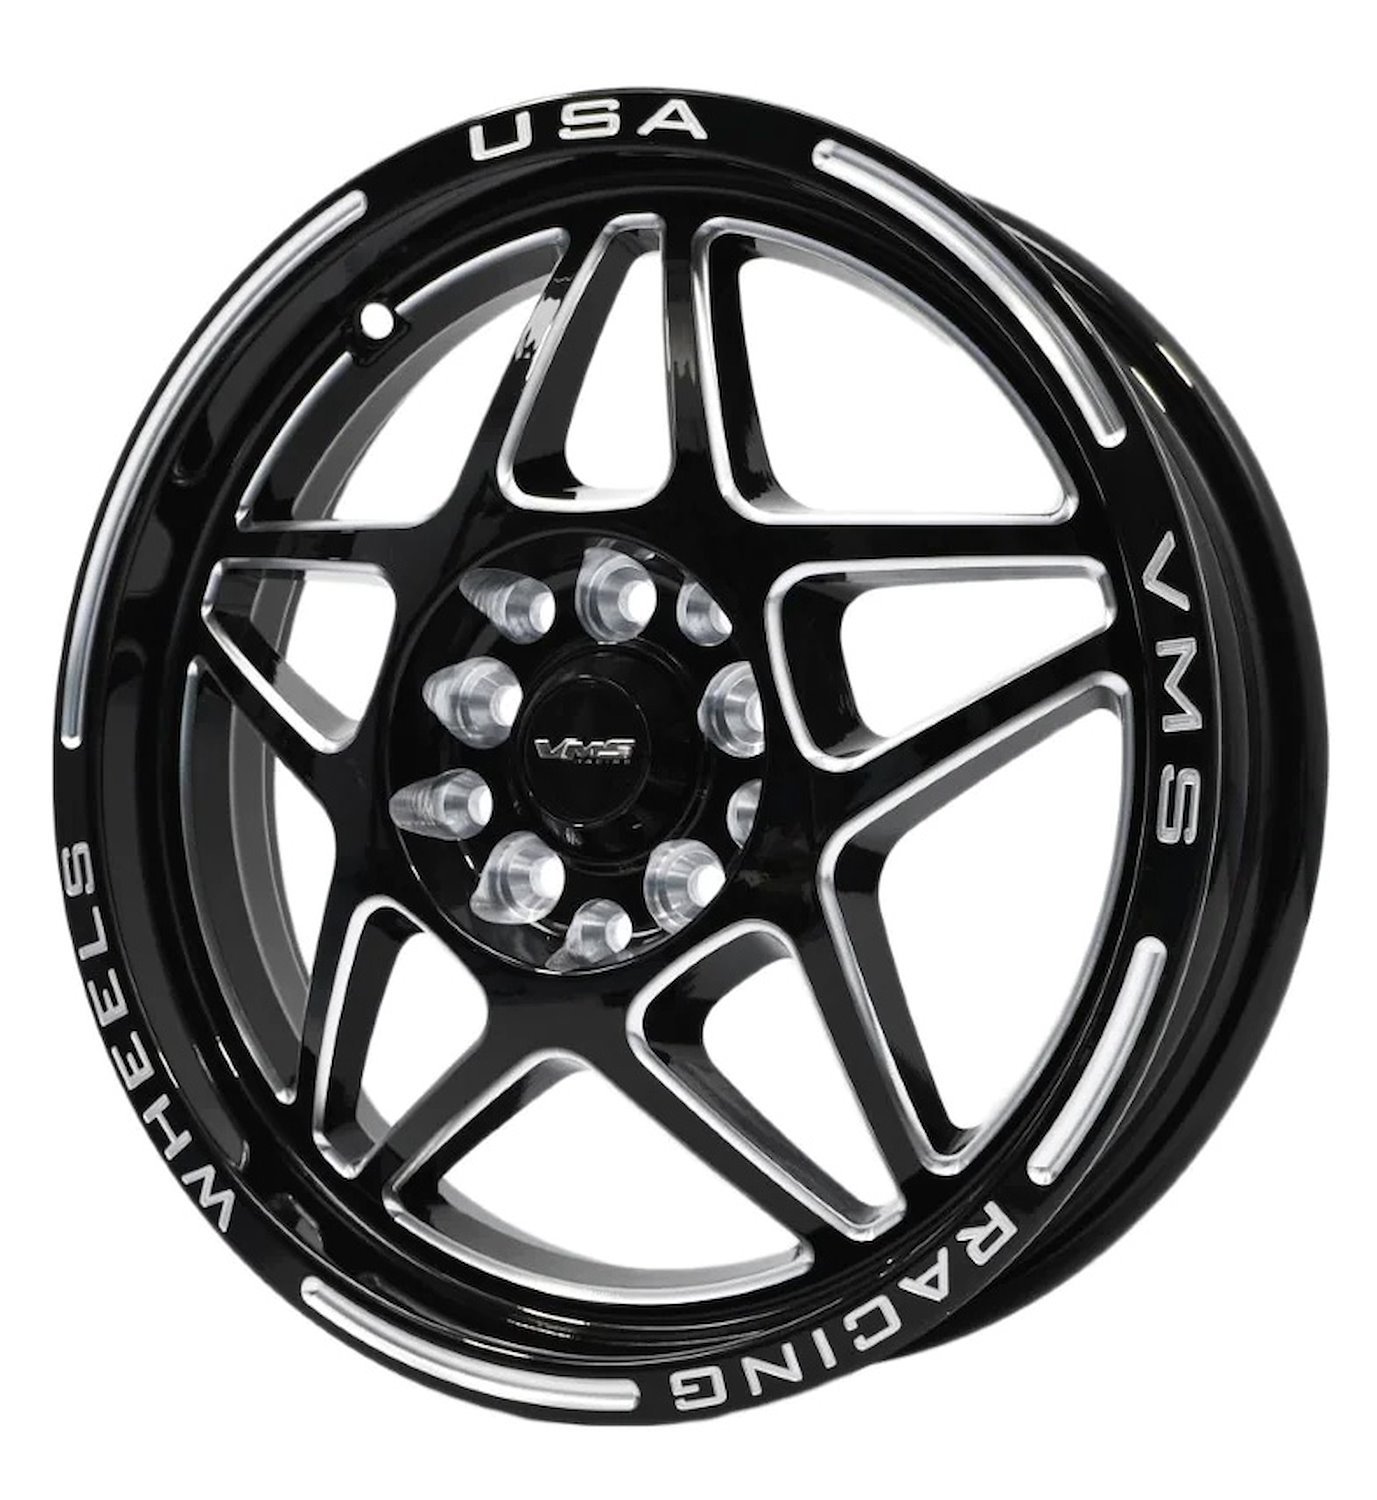 VWDA003 Delta Wheel, Size: 15" x 3.5", Bolt Pattern: 4 x 100 mm & 4 x 4 1/2" (114.3 mm) [Finish: Gloss Black Milled]